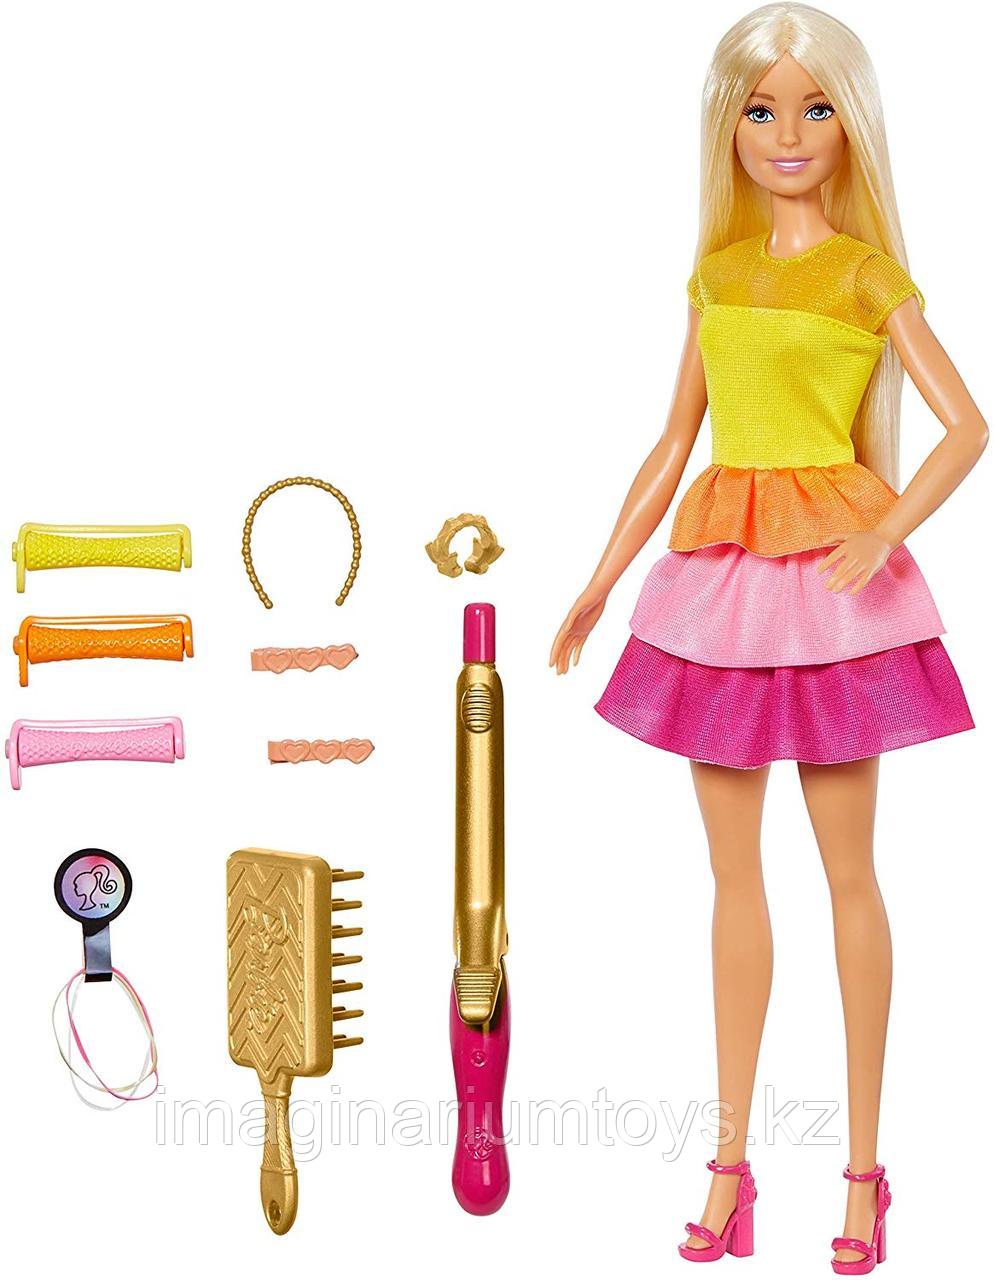 Барби «Удивительные локоны» игровой набор Barbie, фото 1